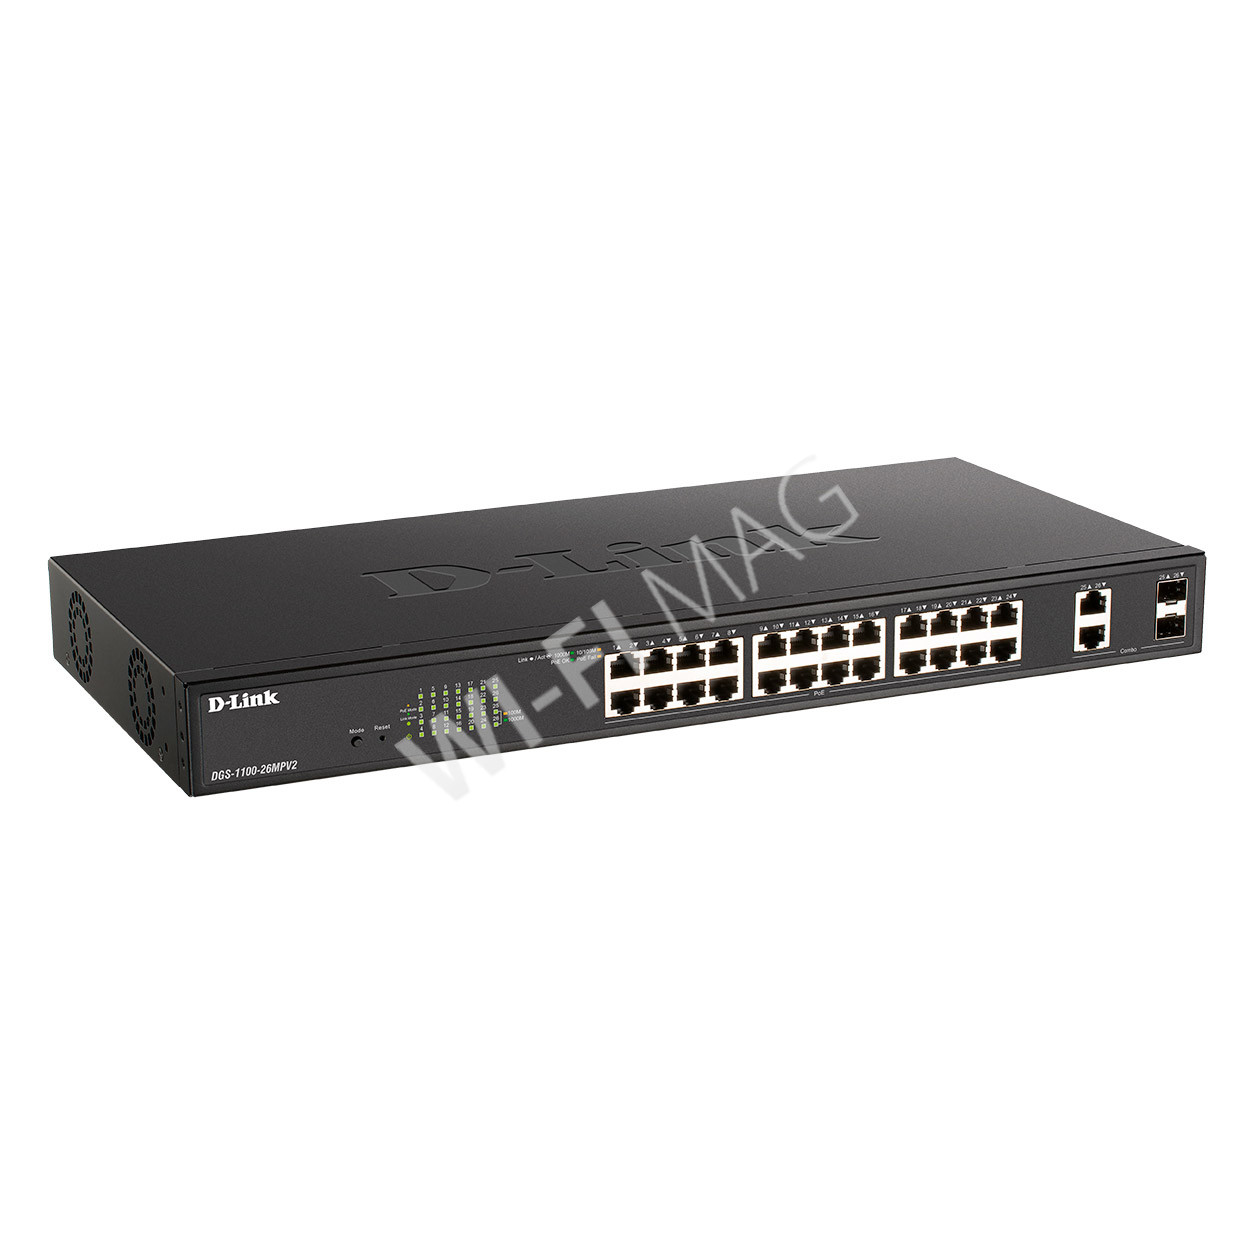 D-Link DGS-1100-26MPV2, управляемый коммутатор с 24 портами PoE+(1 Гбит/с) и 2 комбо-портами SFP(1 Гбит/с)